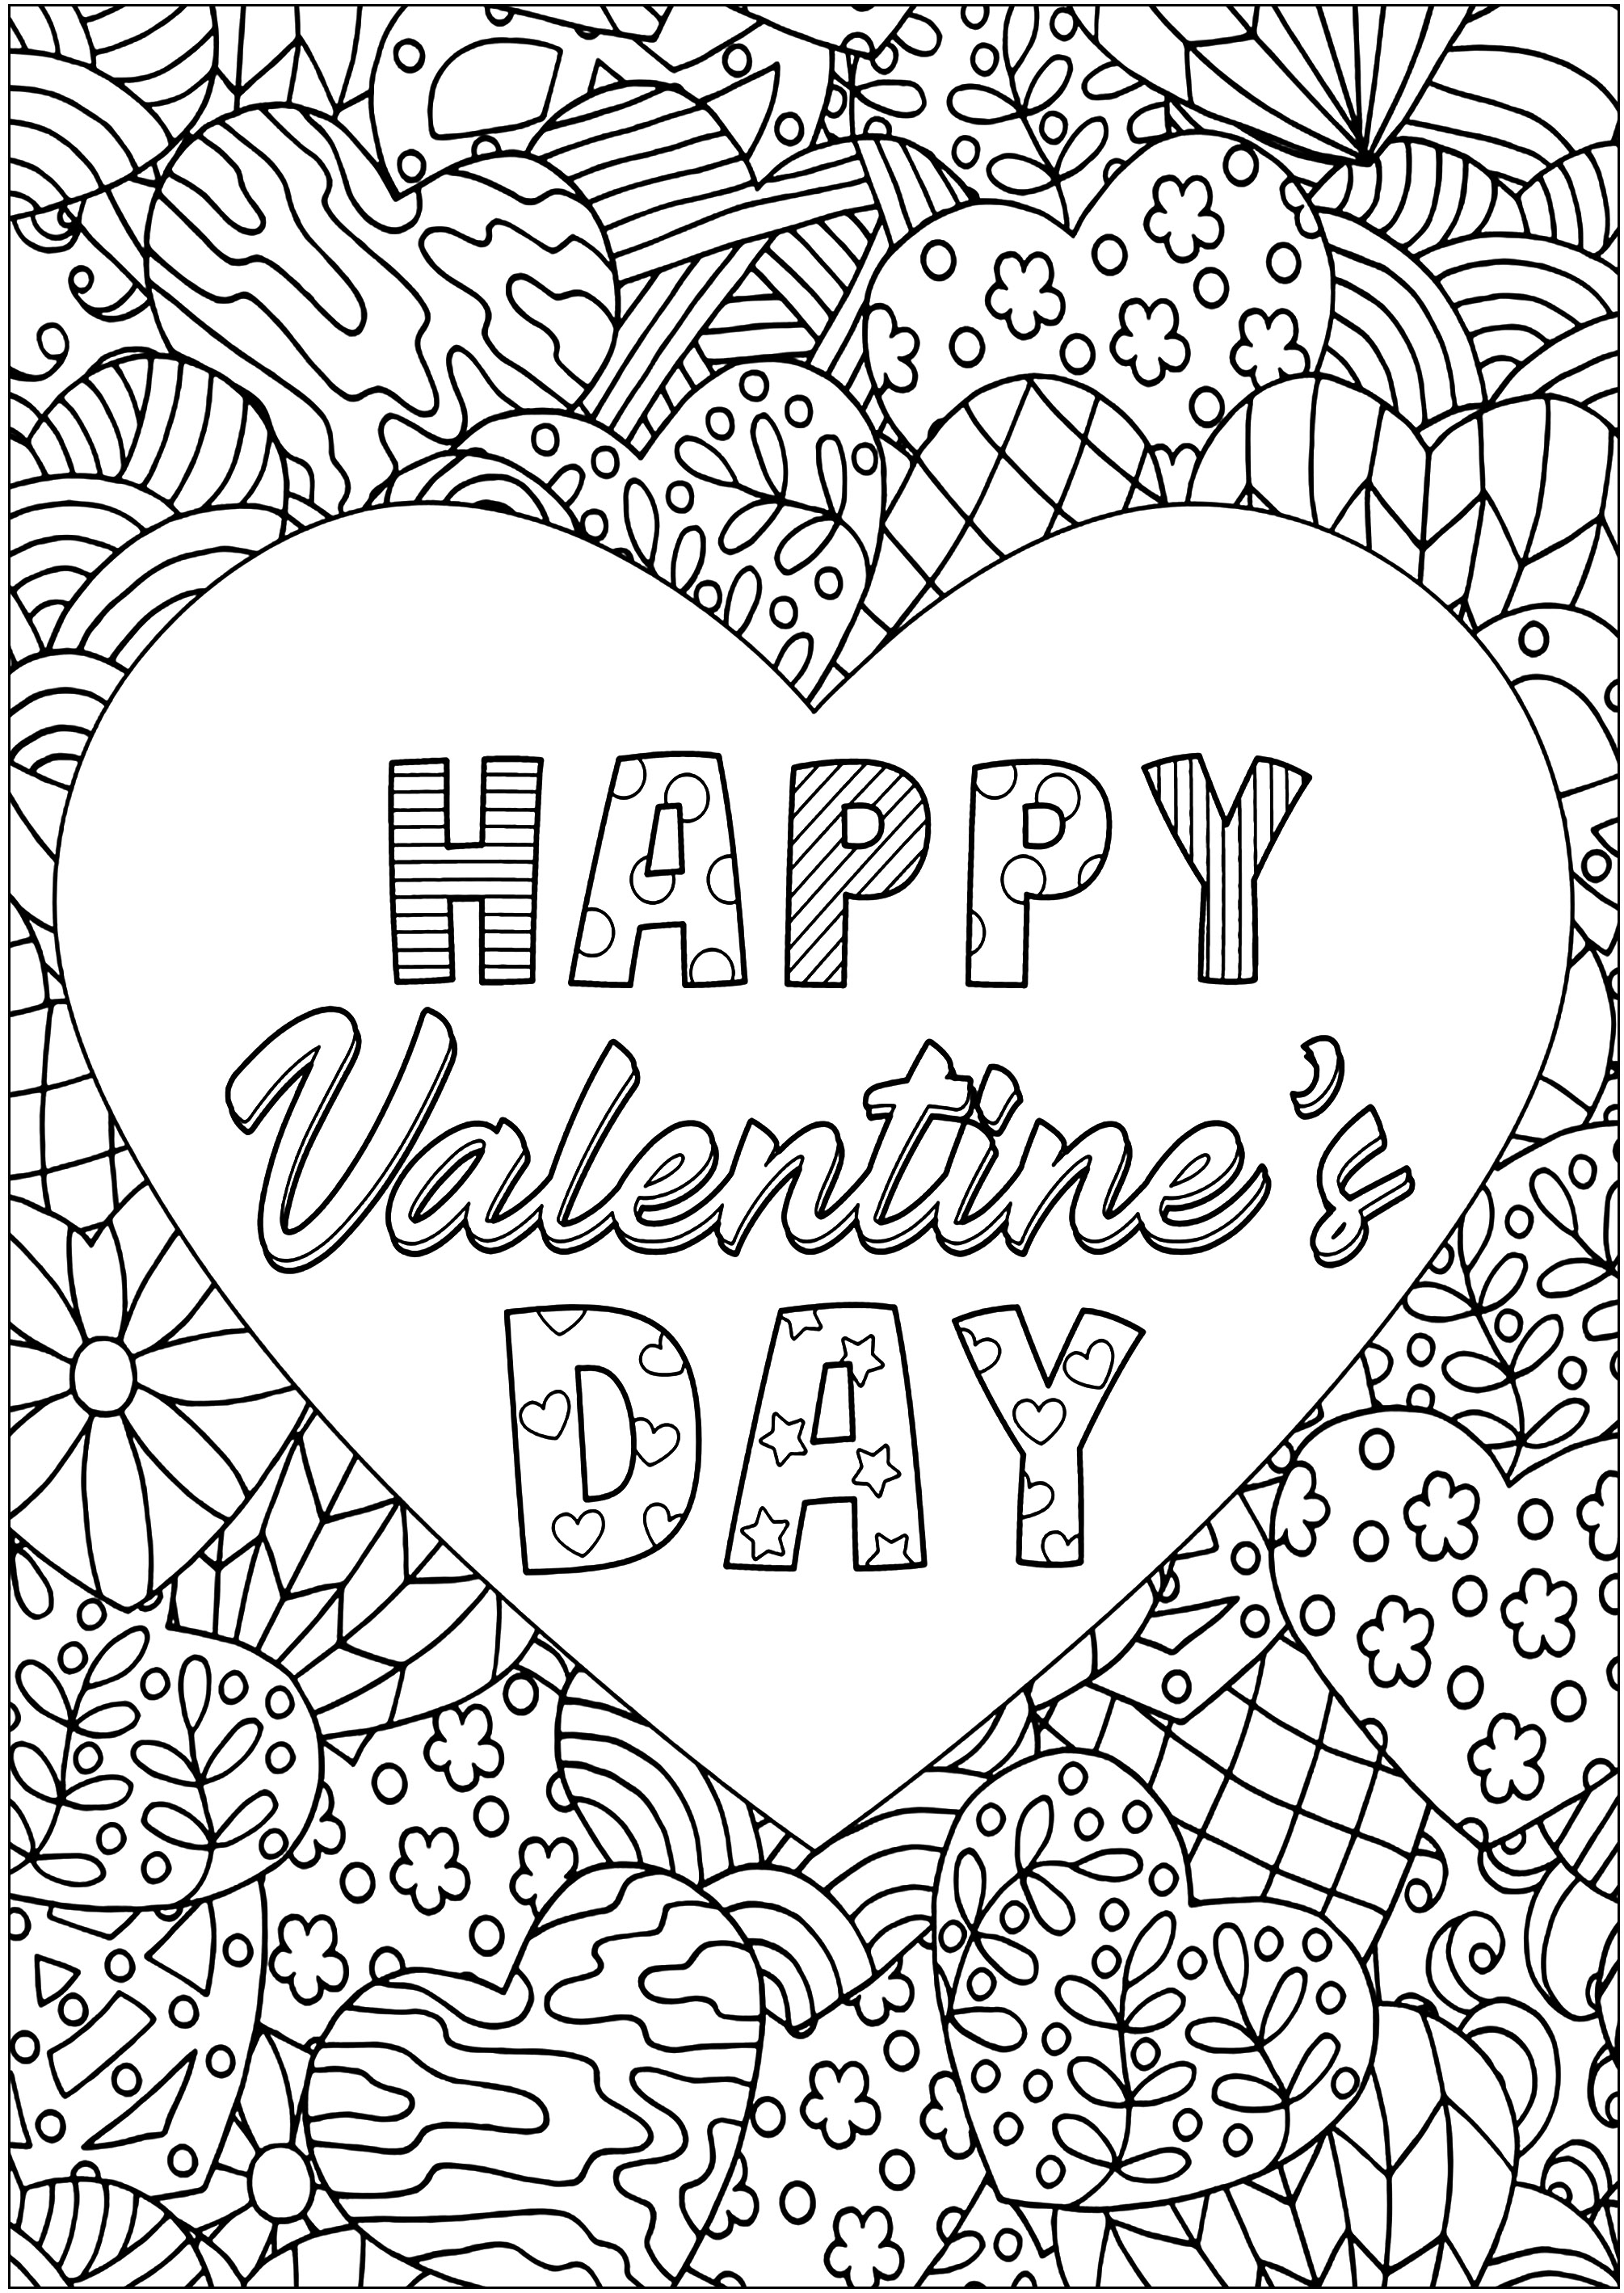 Valentinstag-Herz mit verschlungenen Mustern. Gemusterte Herzen umgeben ein großes Herz mit der Aufschrift 'HAPPY VALENTINE'S DAY'.